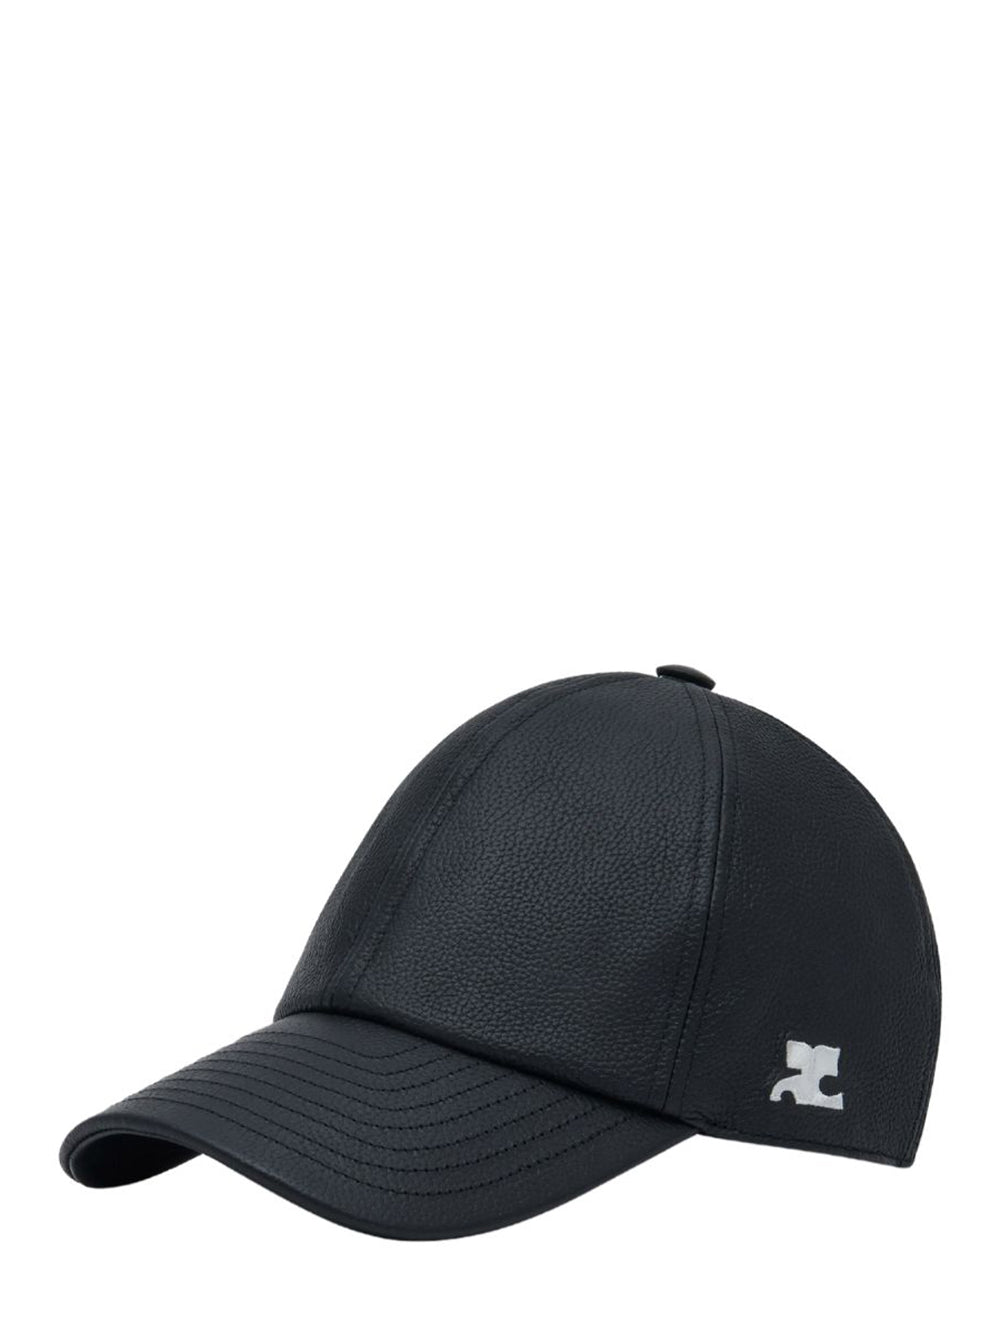 Cotton Signature Cap (Black)